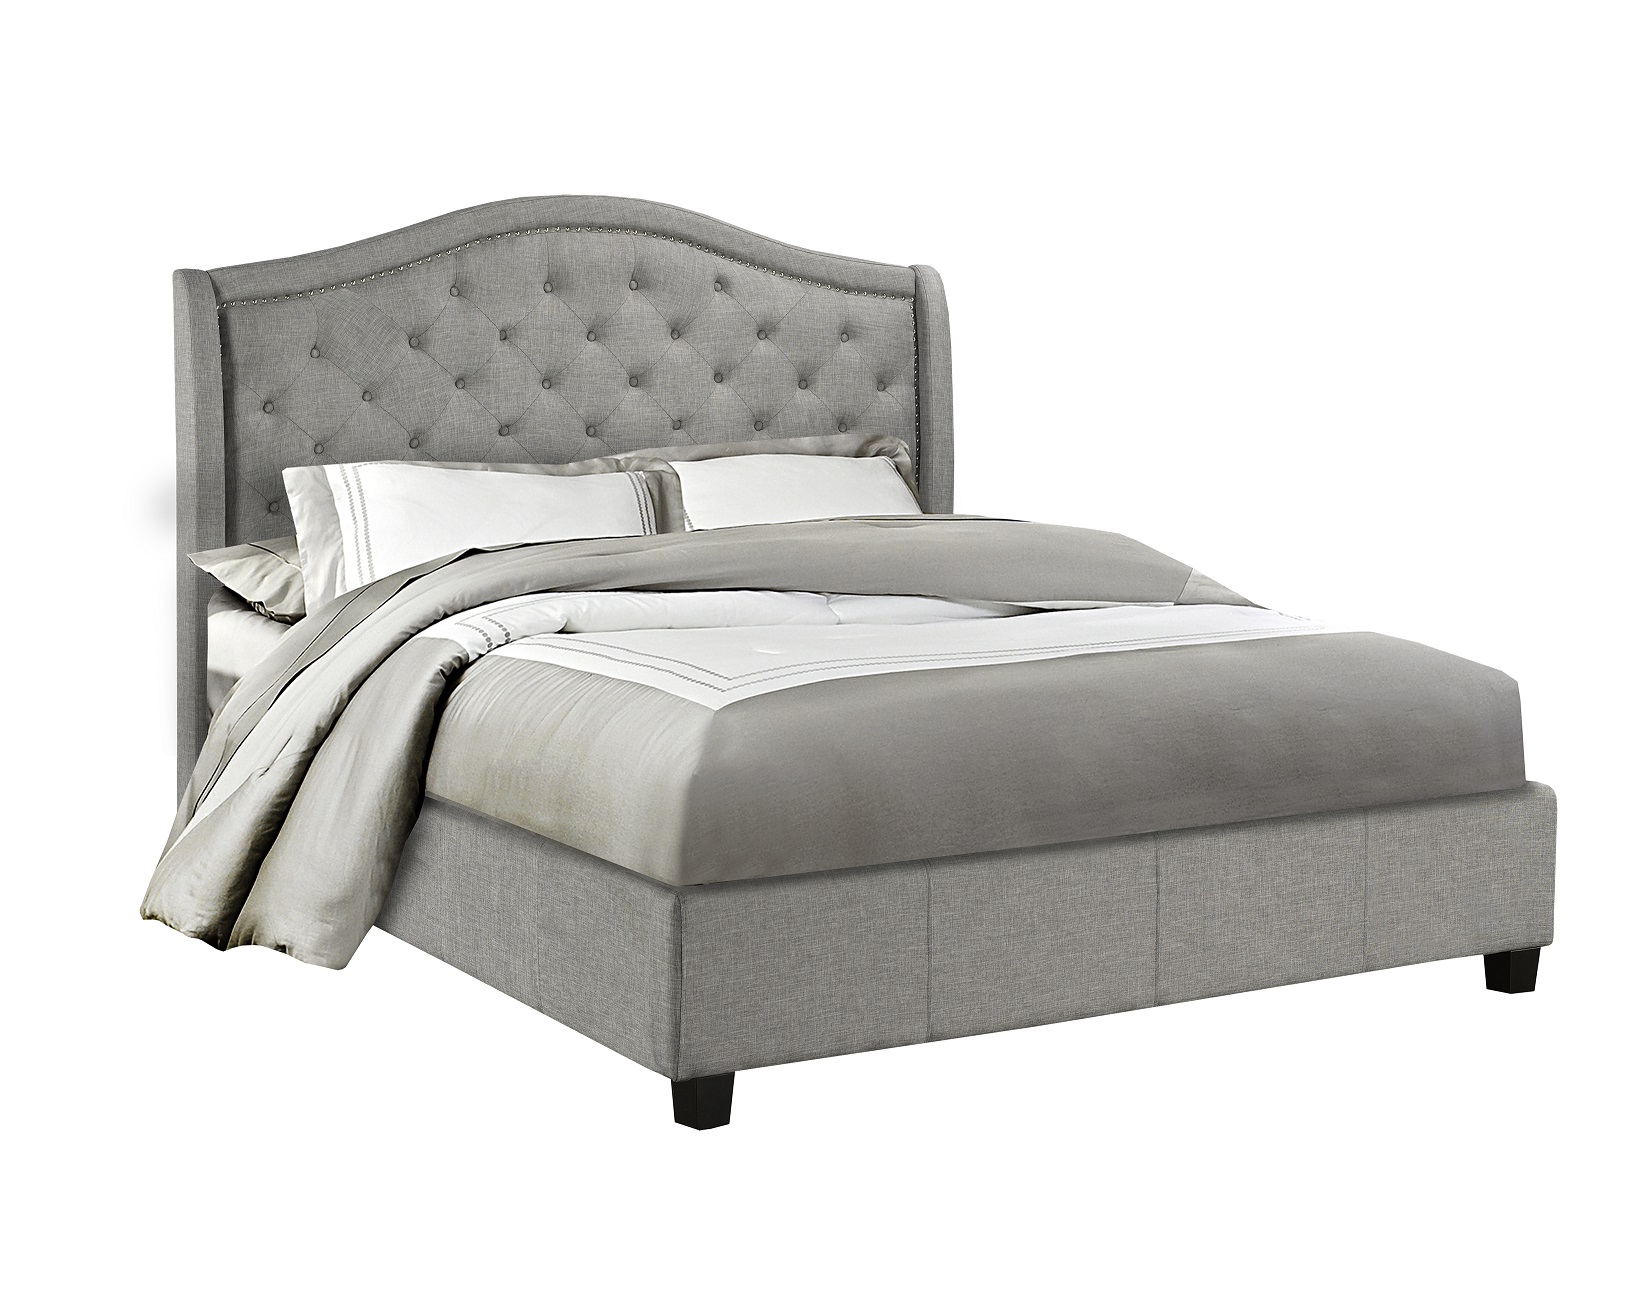 BRSX-5262 Upholstered Bed